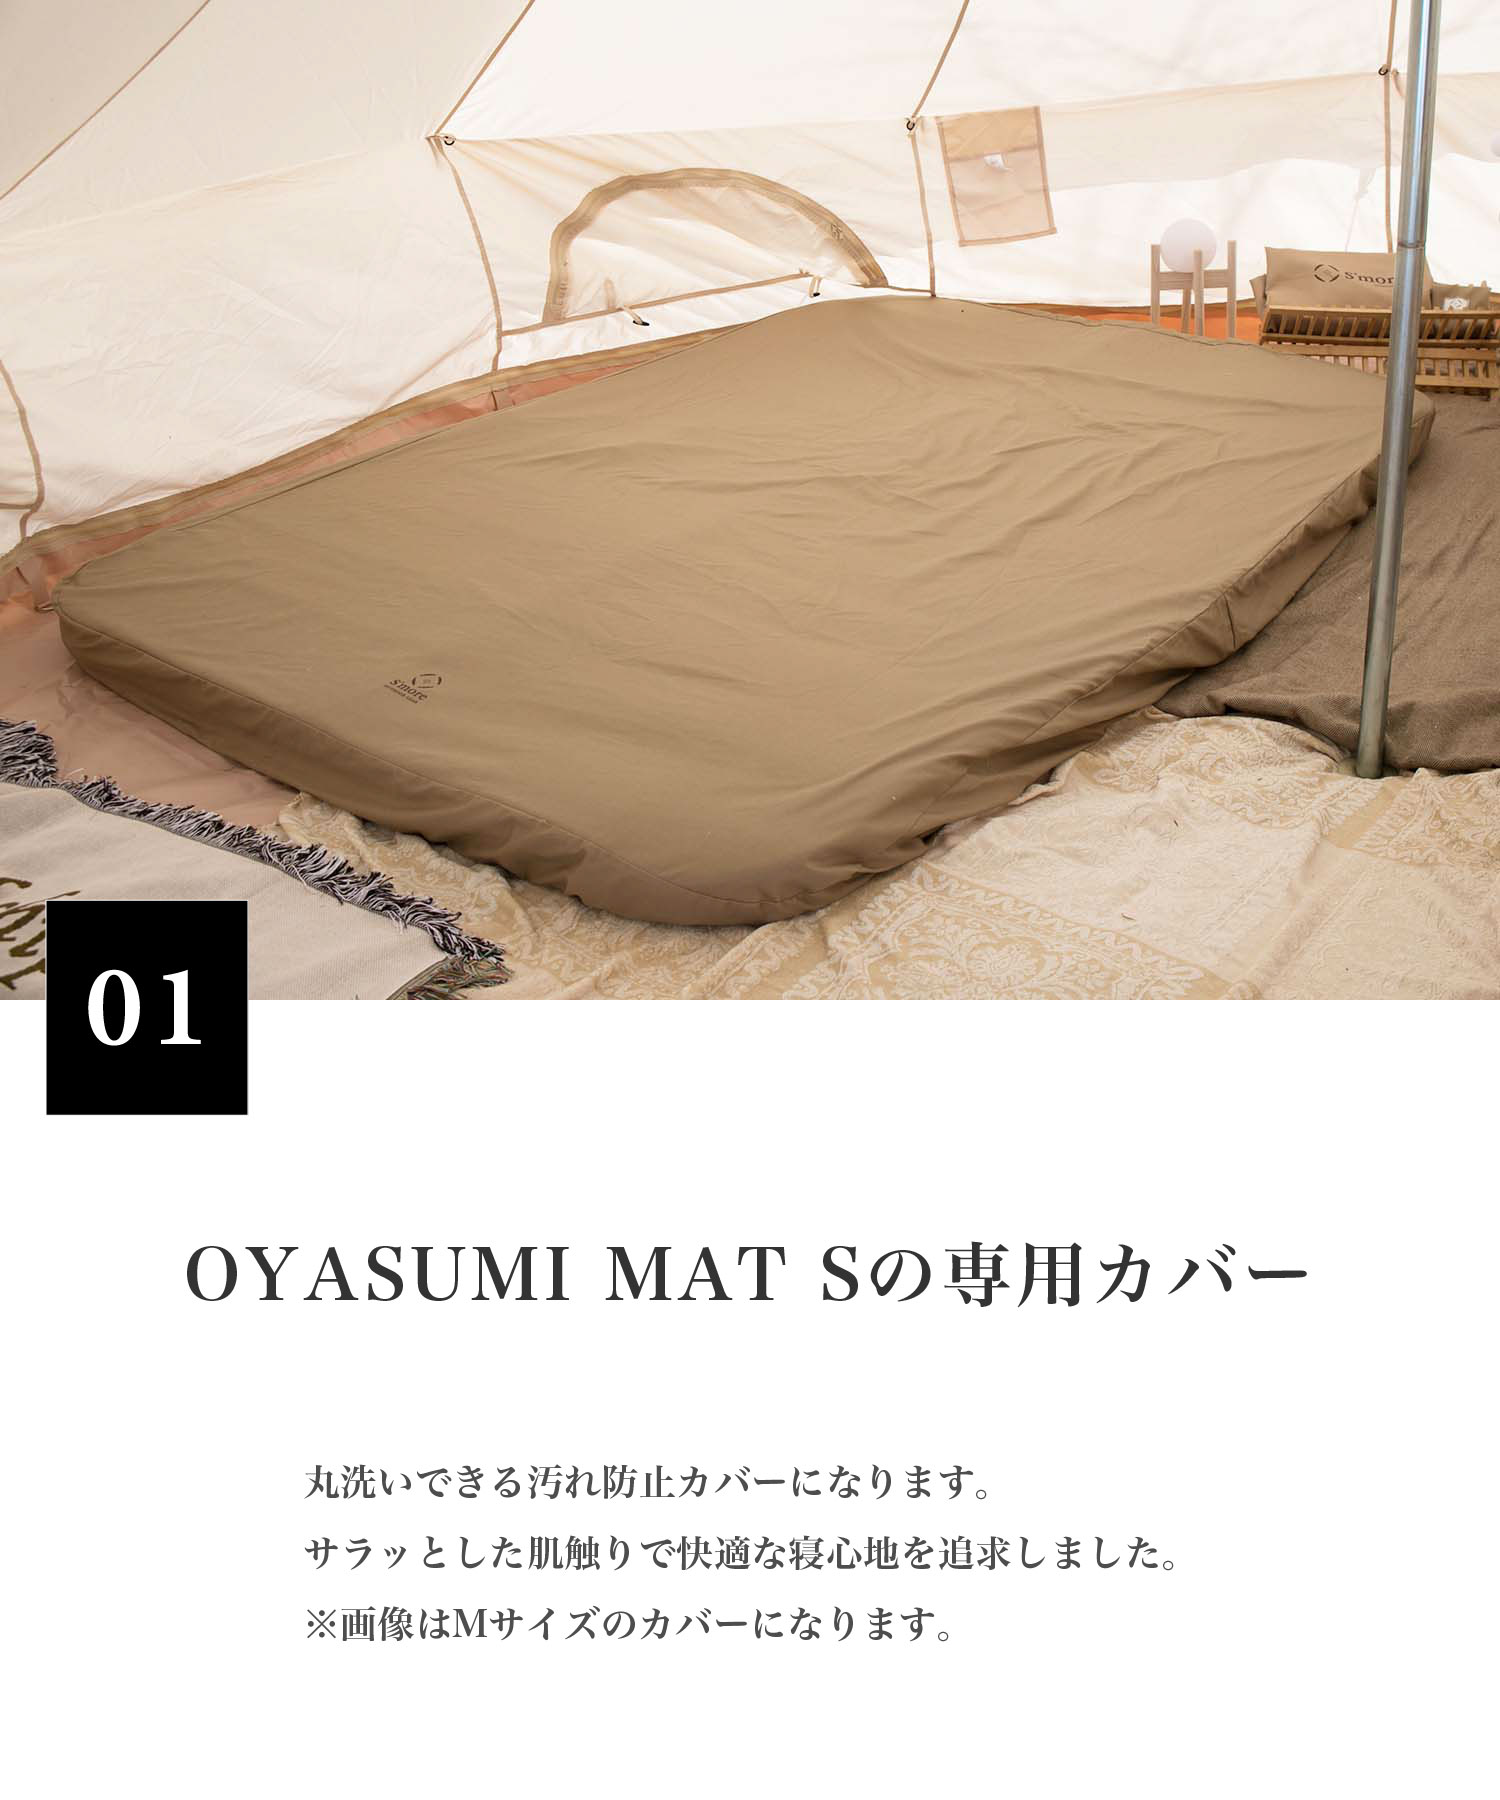 スモア OYASUMI MAT COVER S